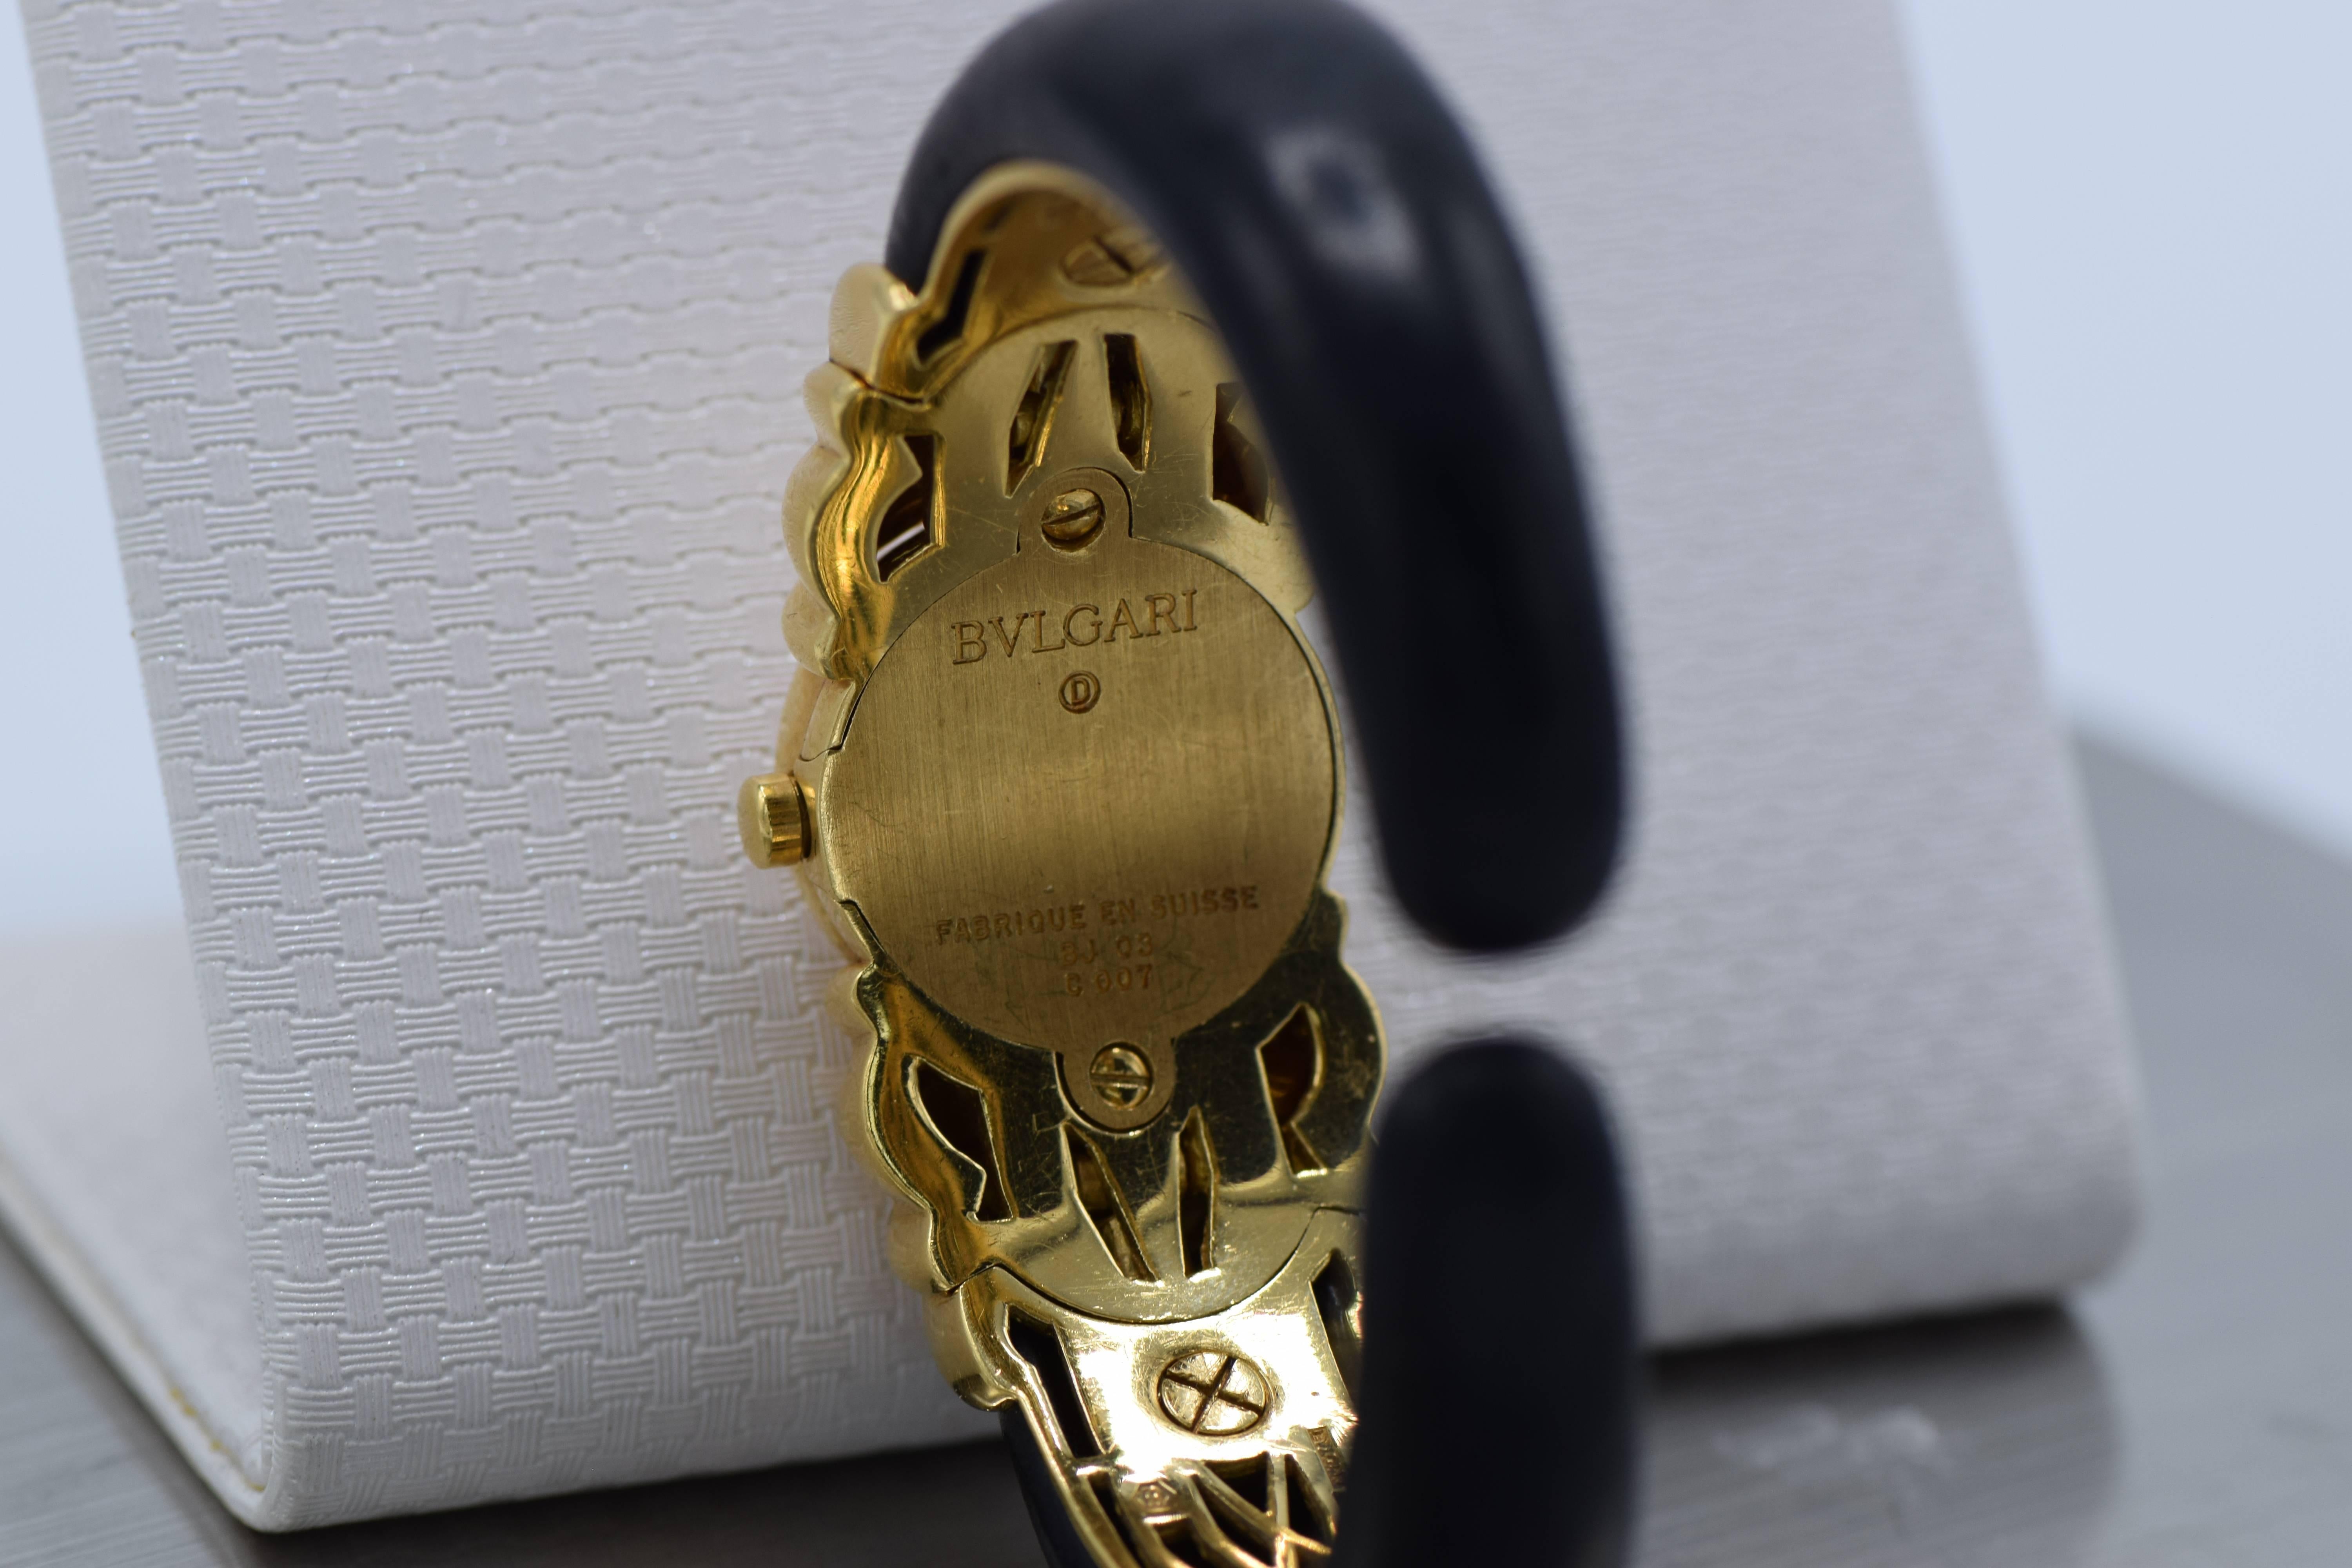 Bulgari 'Antalya' Uhr 18K Gold, mit auswechselbaren Armbändern

Kommt mit braunen und roten Bändern 